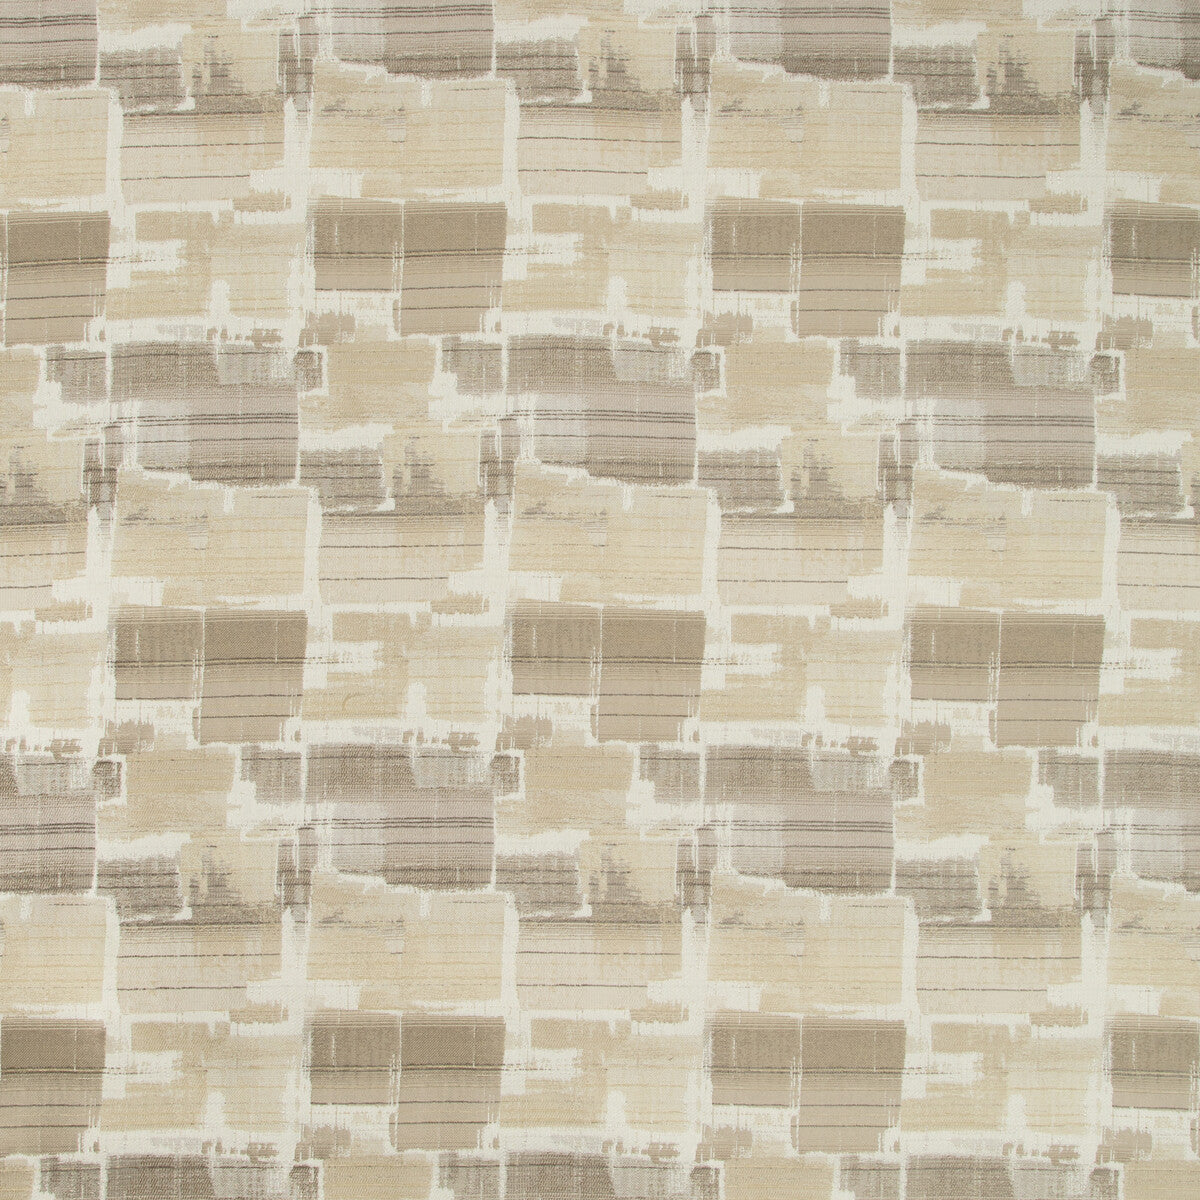 Kravet Design fabric in 35689-16 color - pattern 35689.16.0 - by Kravet Design